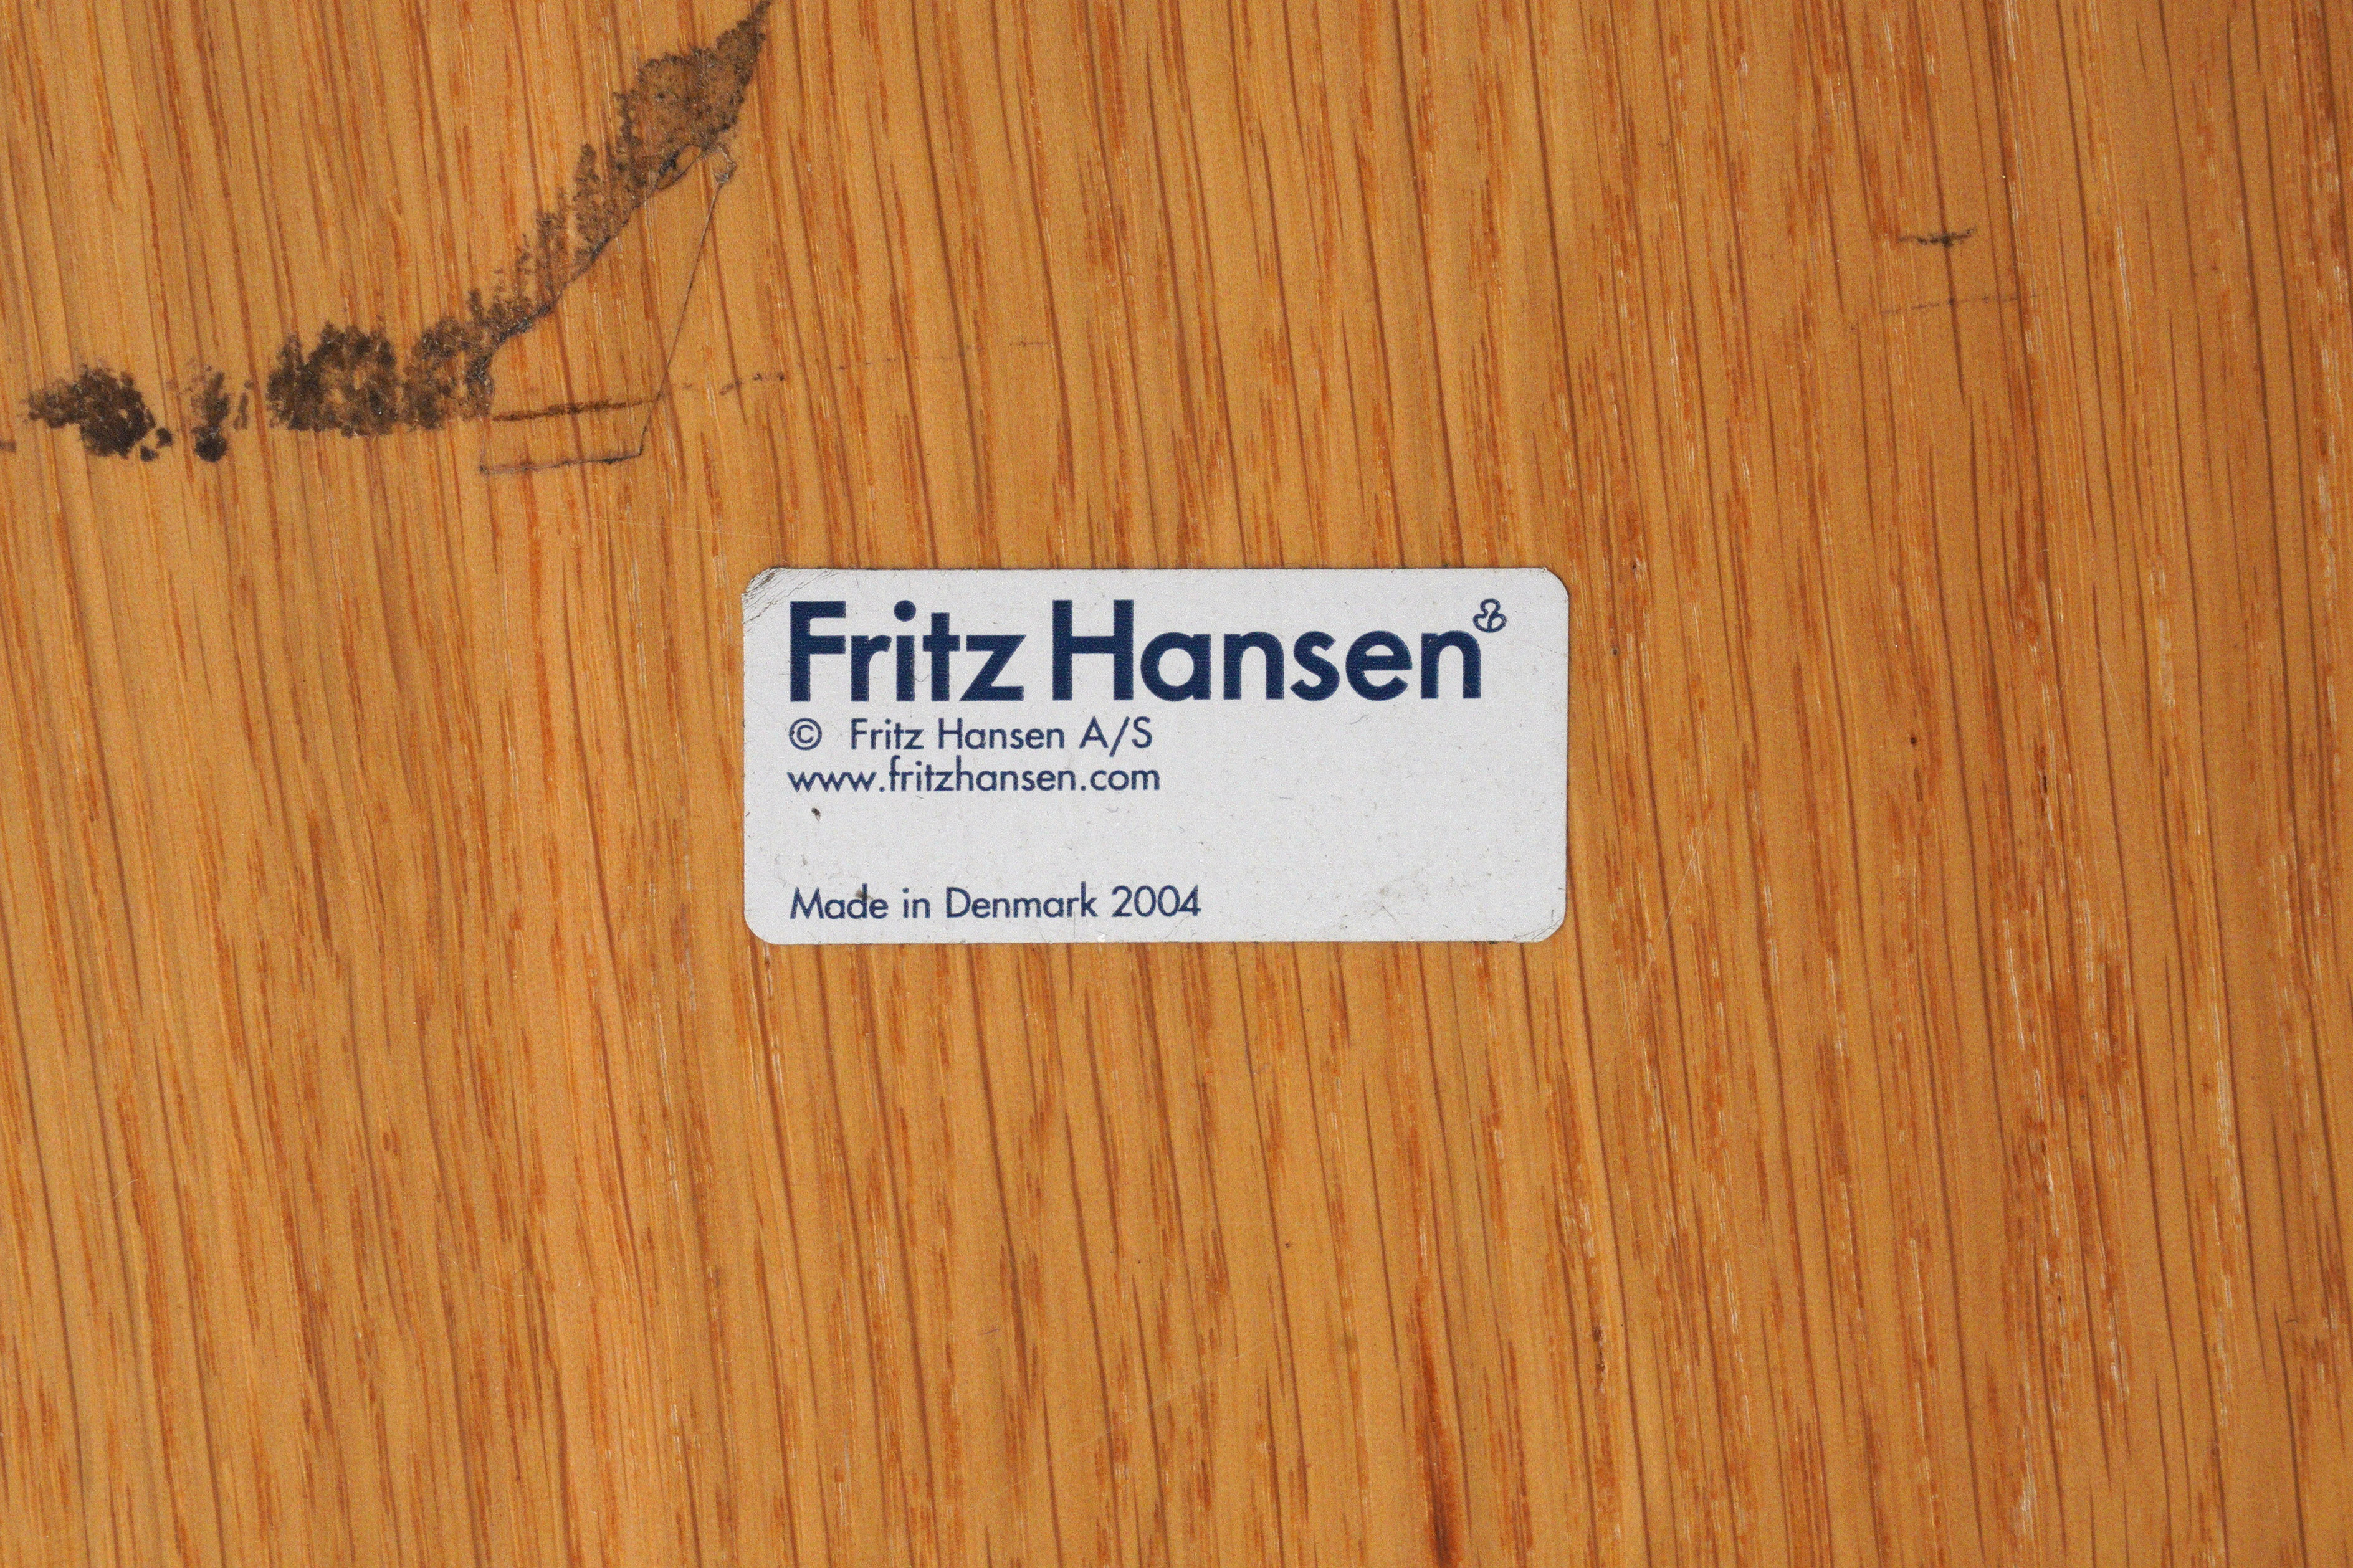 PIET HEIN (SWEDISH 1905-1996) & BRUNO MATHSSON (SWEDISH 1907-1988) FOR FRITZ HANSEN, DENMARK Preview - Image 4 of 5